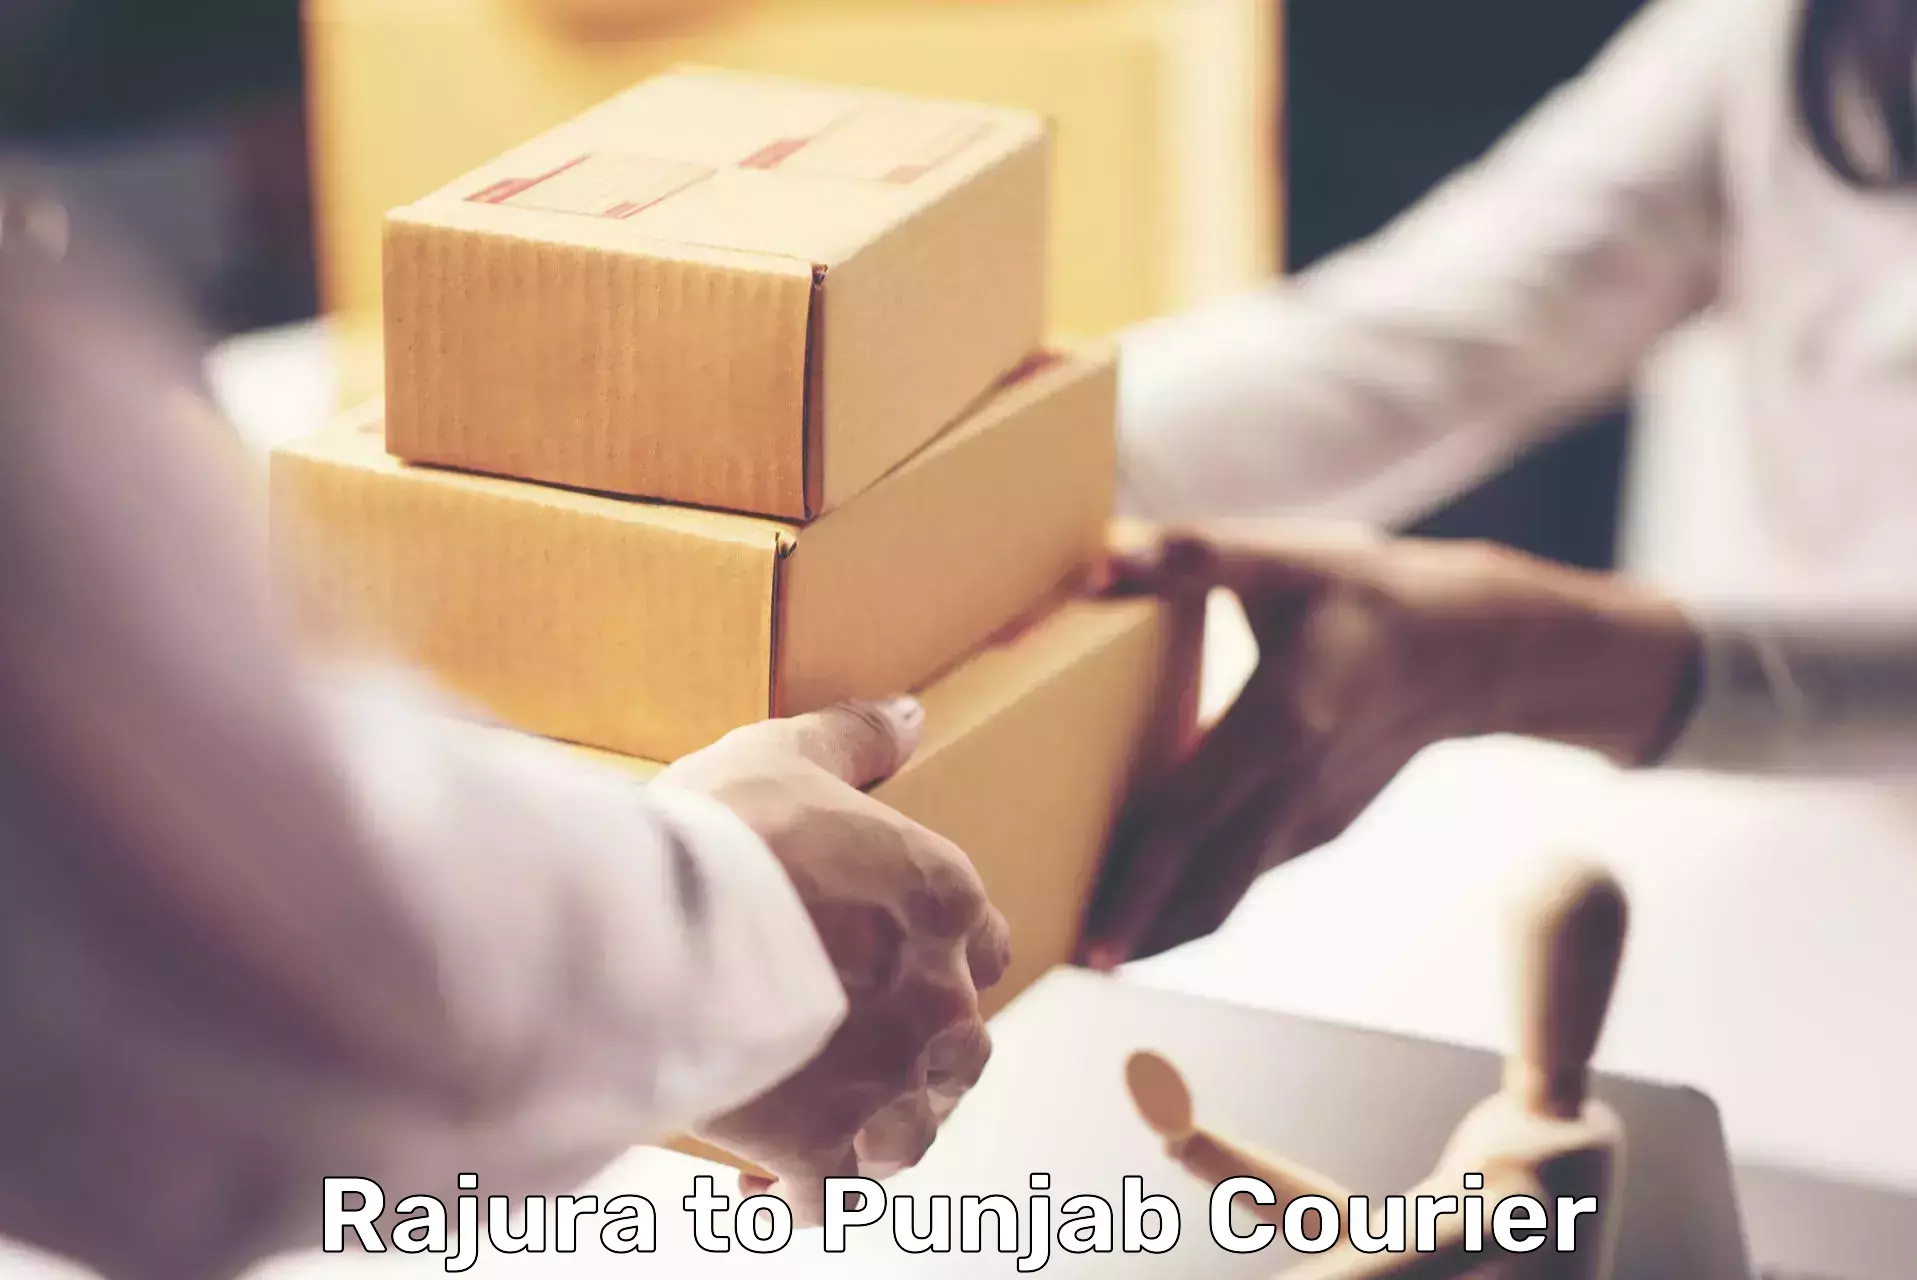 Efficient courier operations Rajura to Rajpura